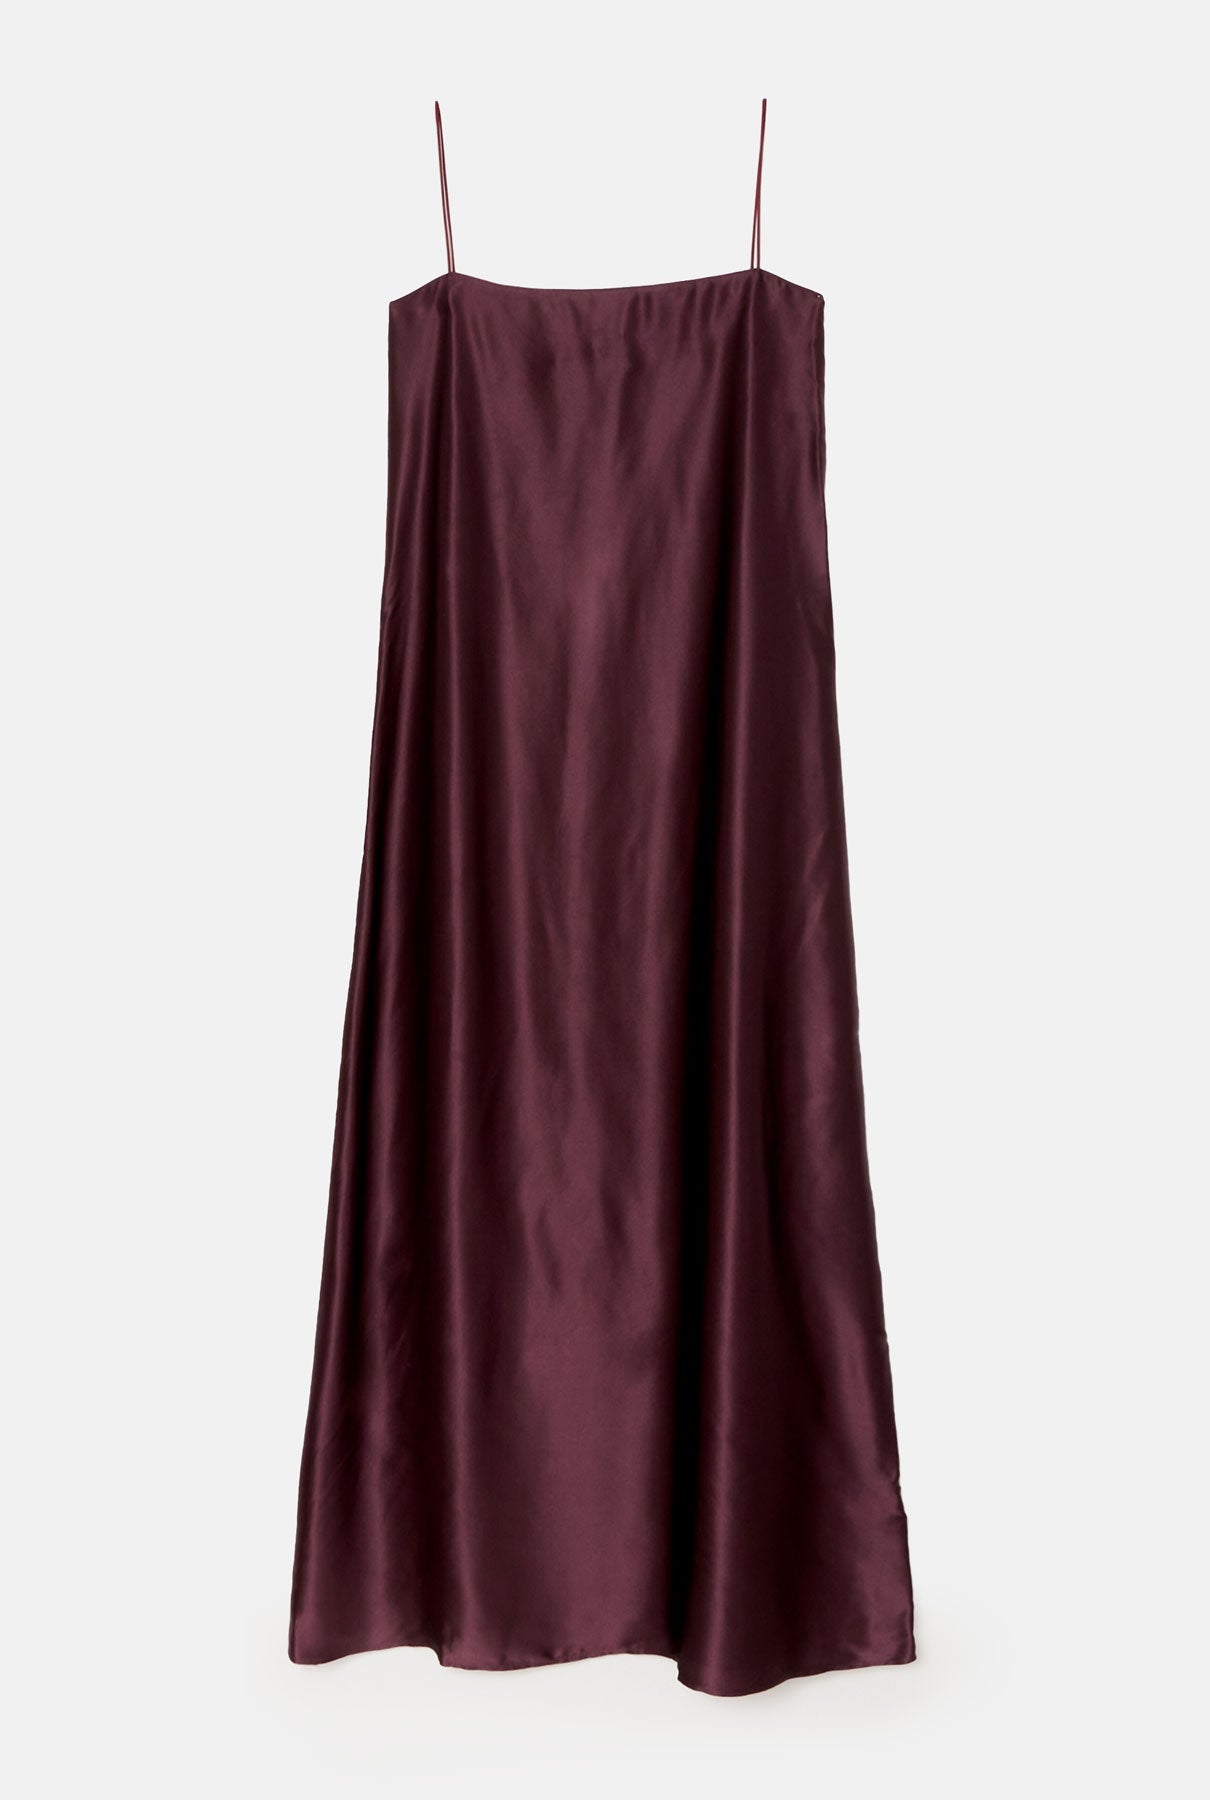 Flor extralong dress purple Dresses Atelier Aletheia 